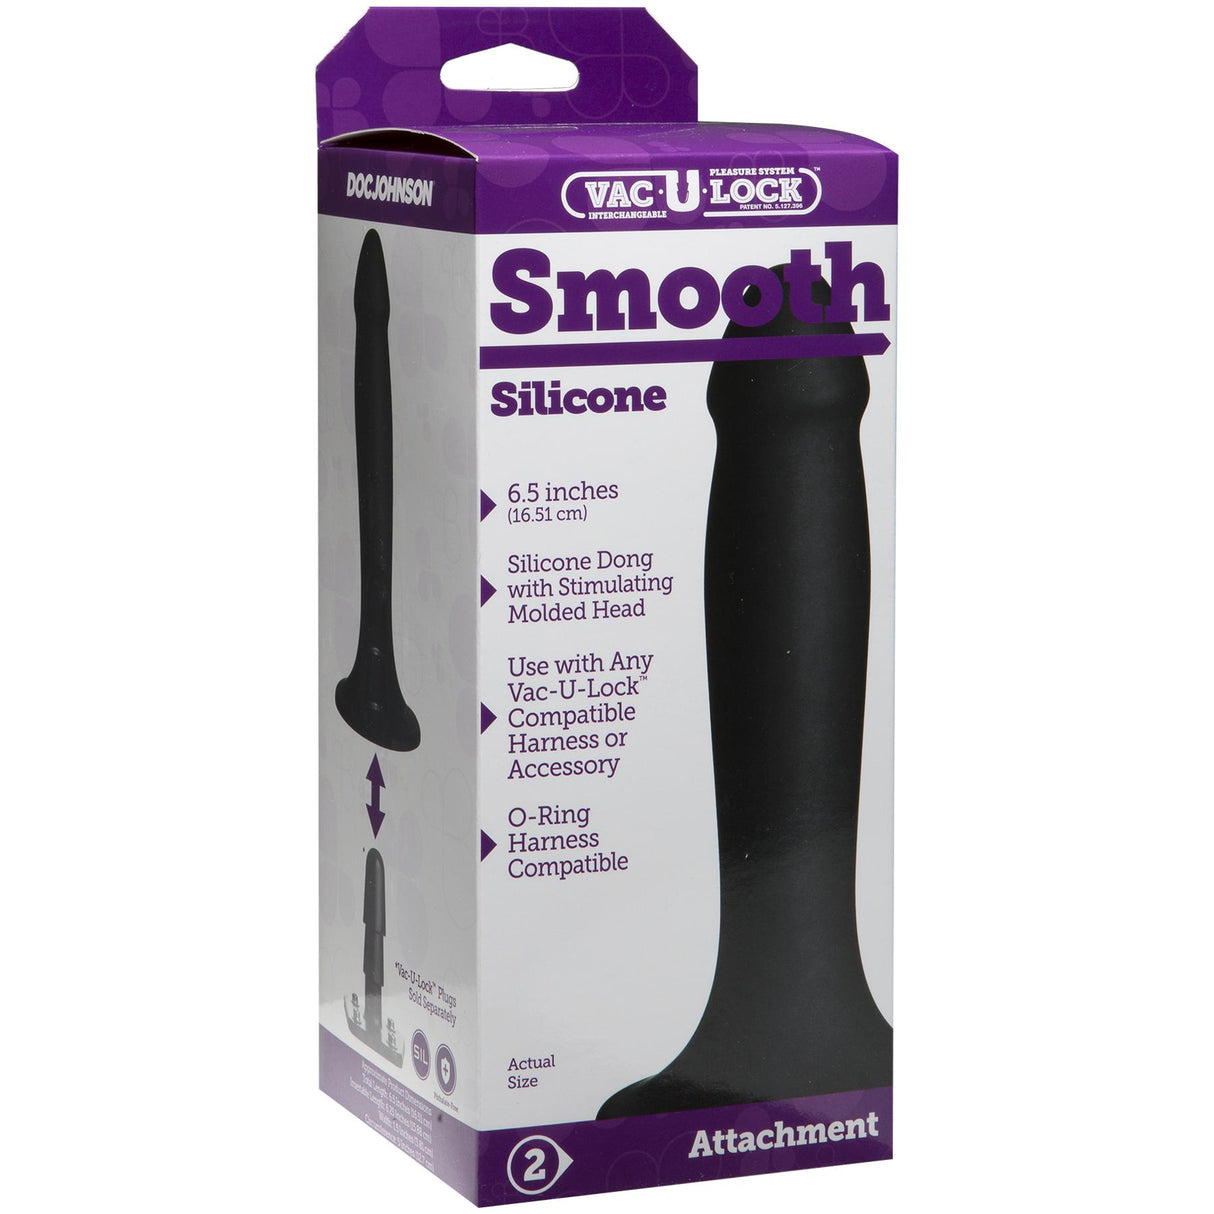 Vac-U-Lock Smooth Silicone Dildo Attachment